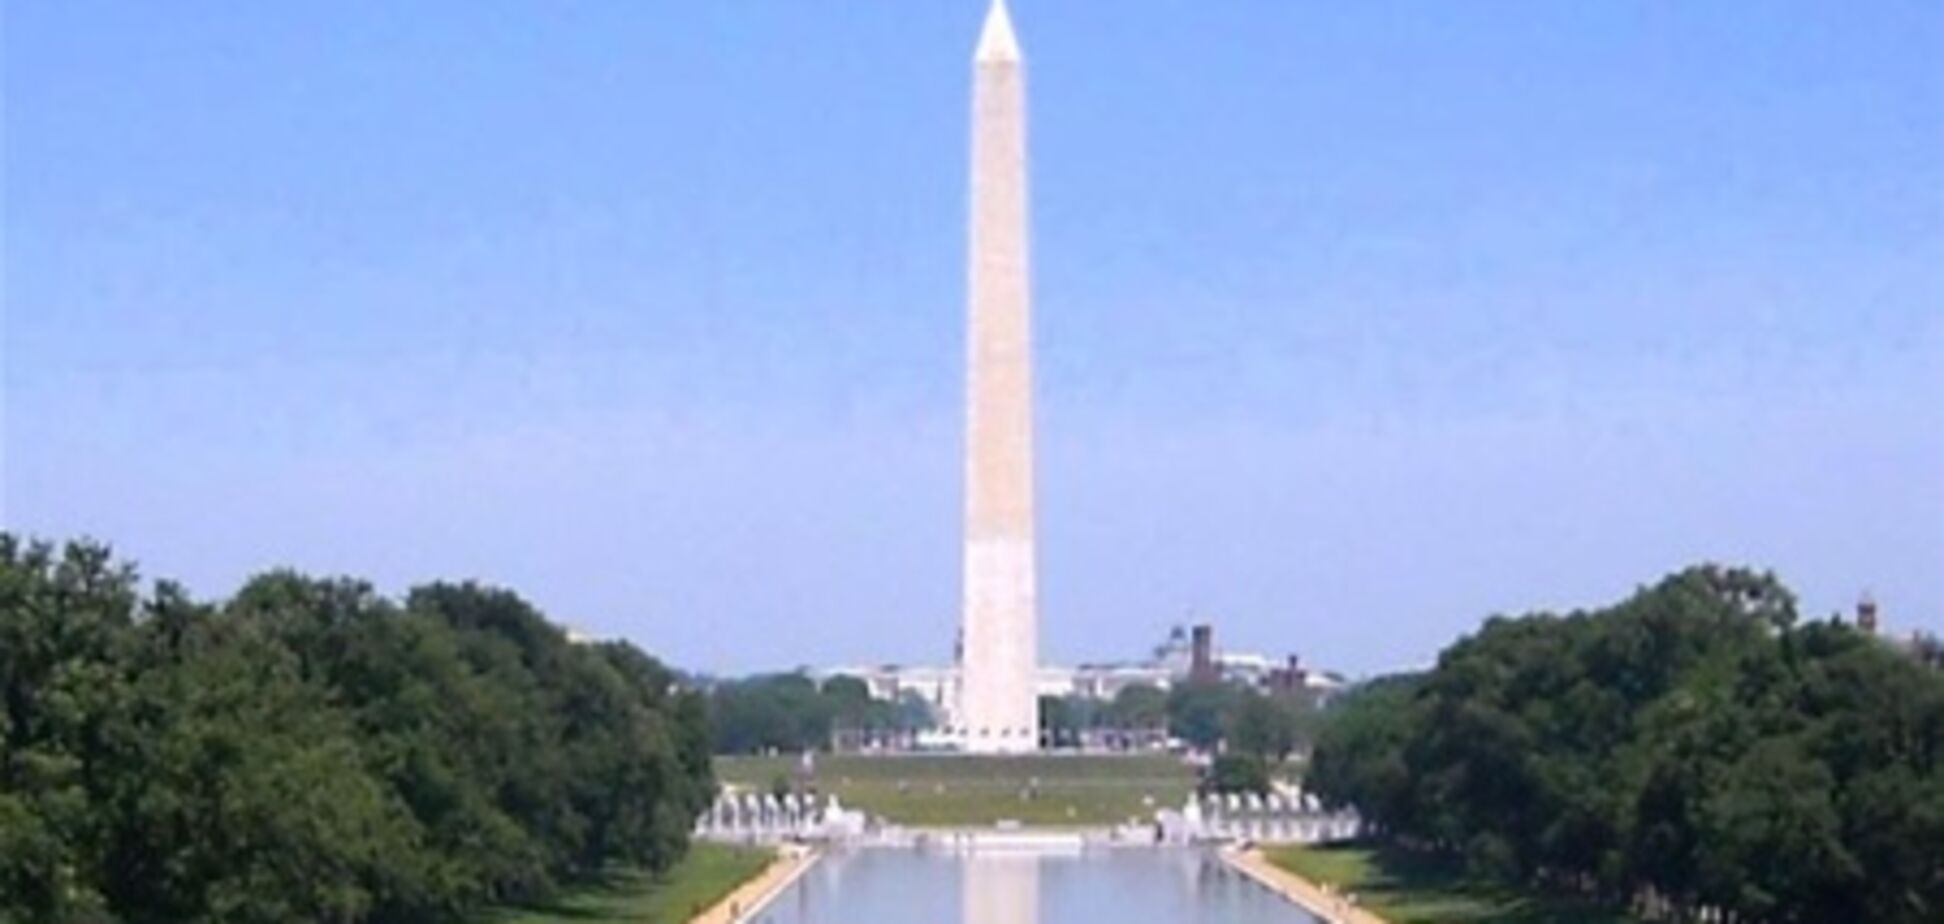 Знаменитый монумент Вашингтона закрыли на ремонт